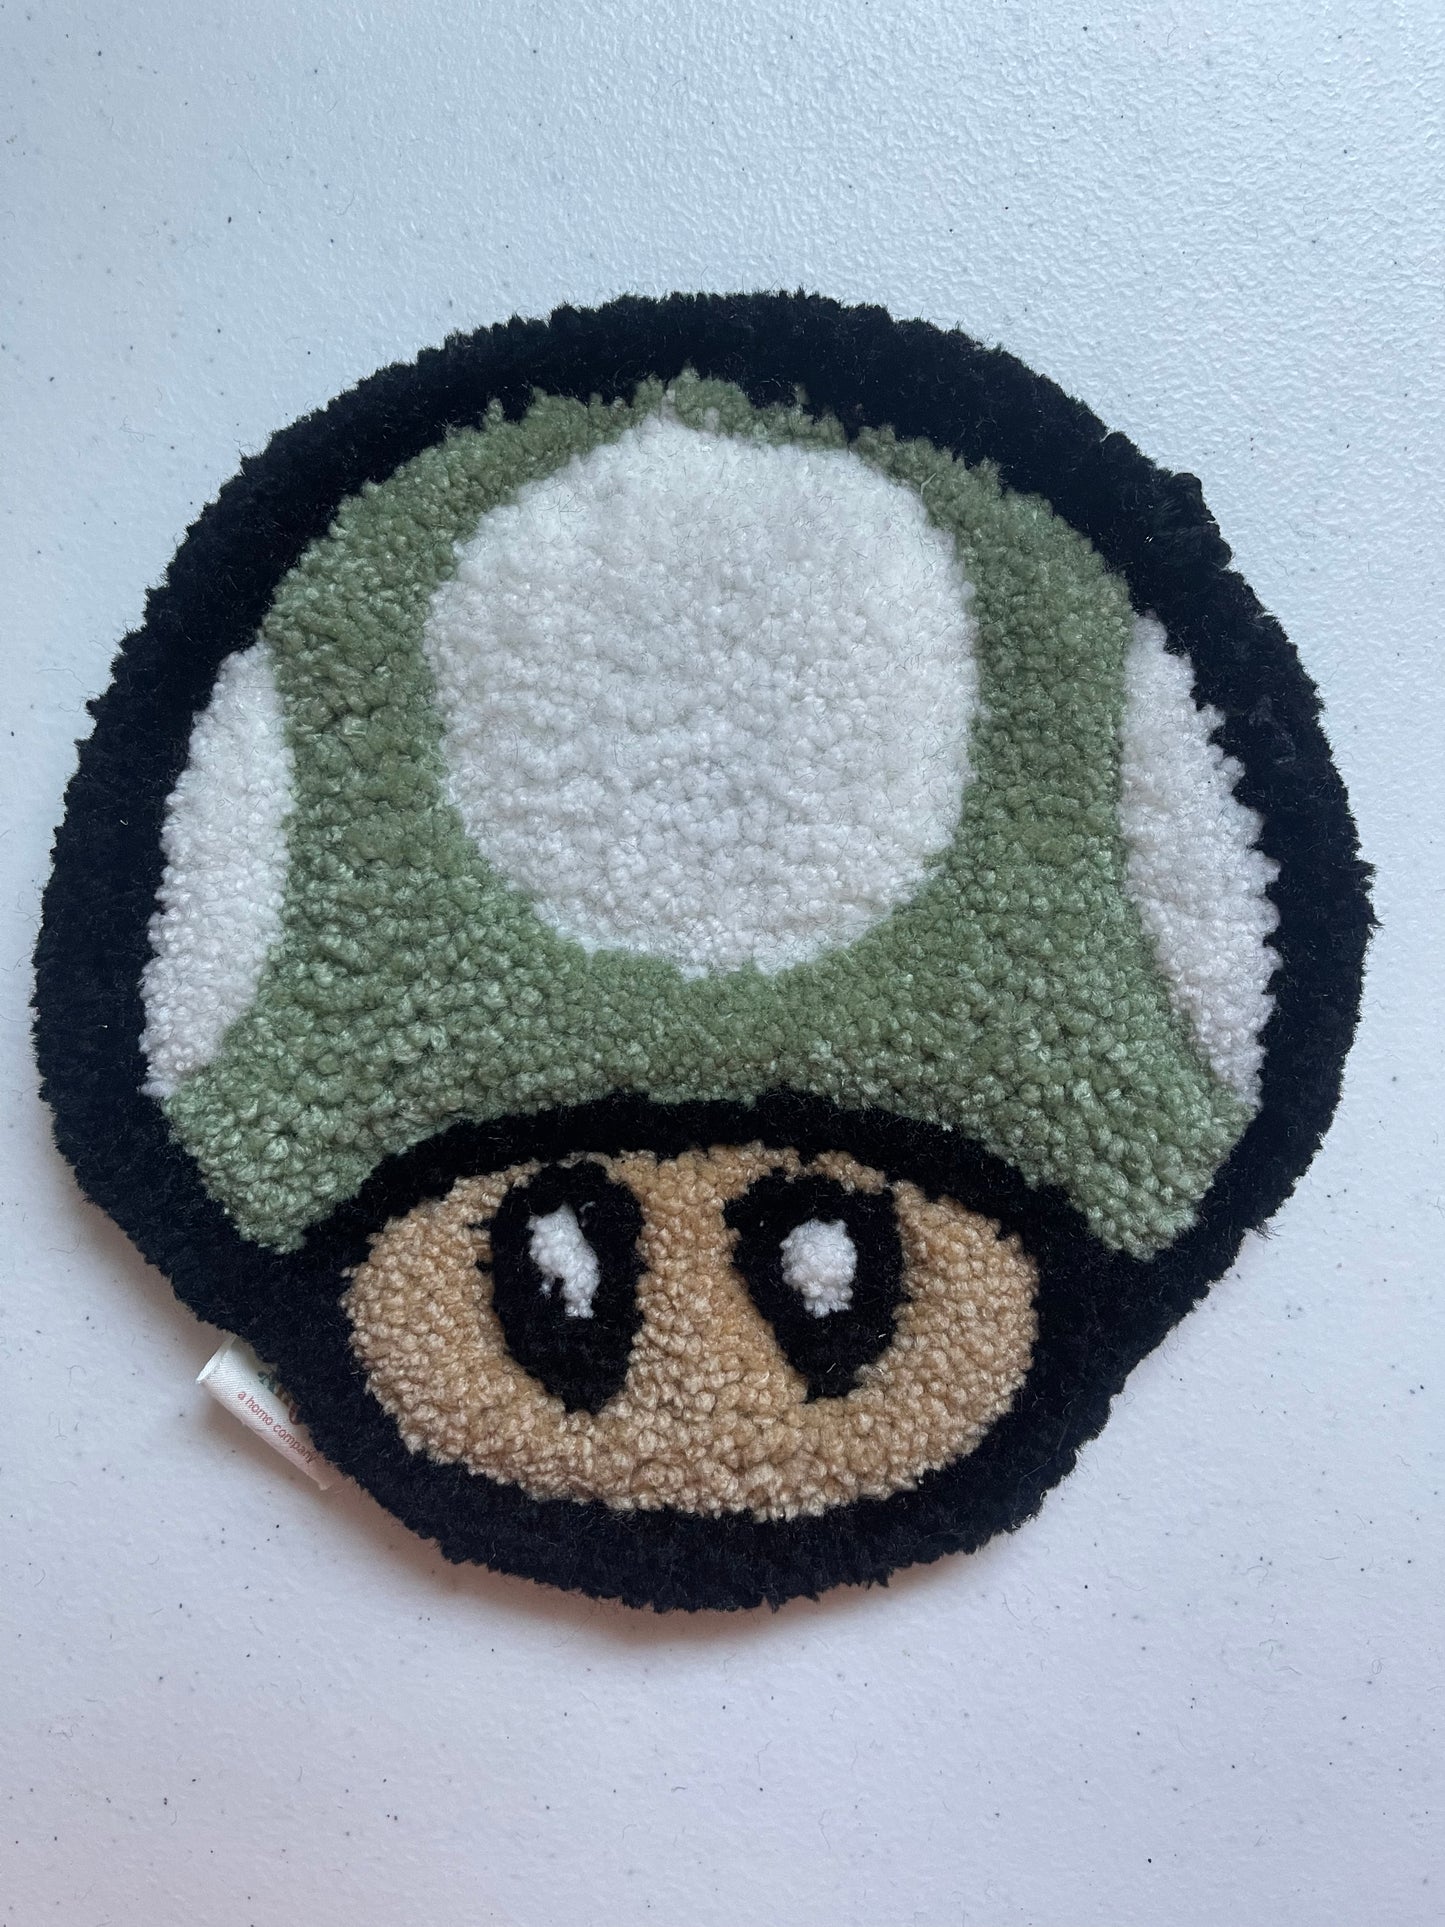 Mario Kart Mini Mushroom